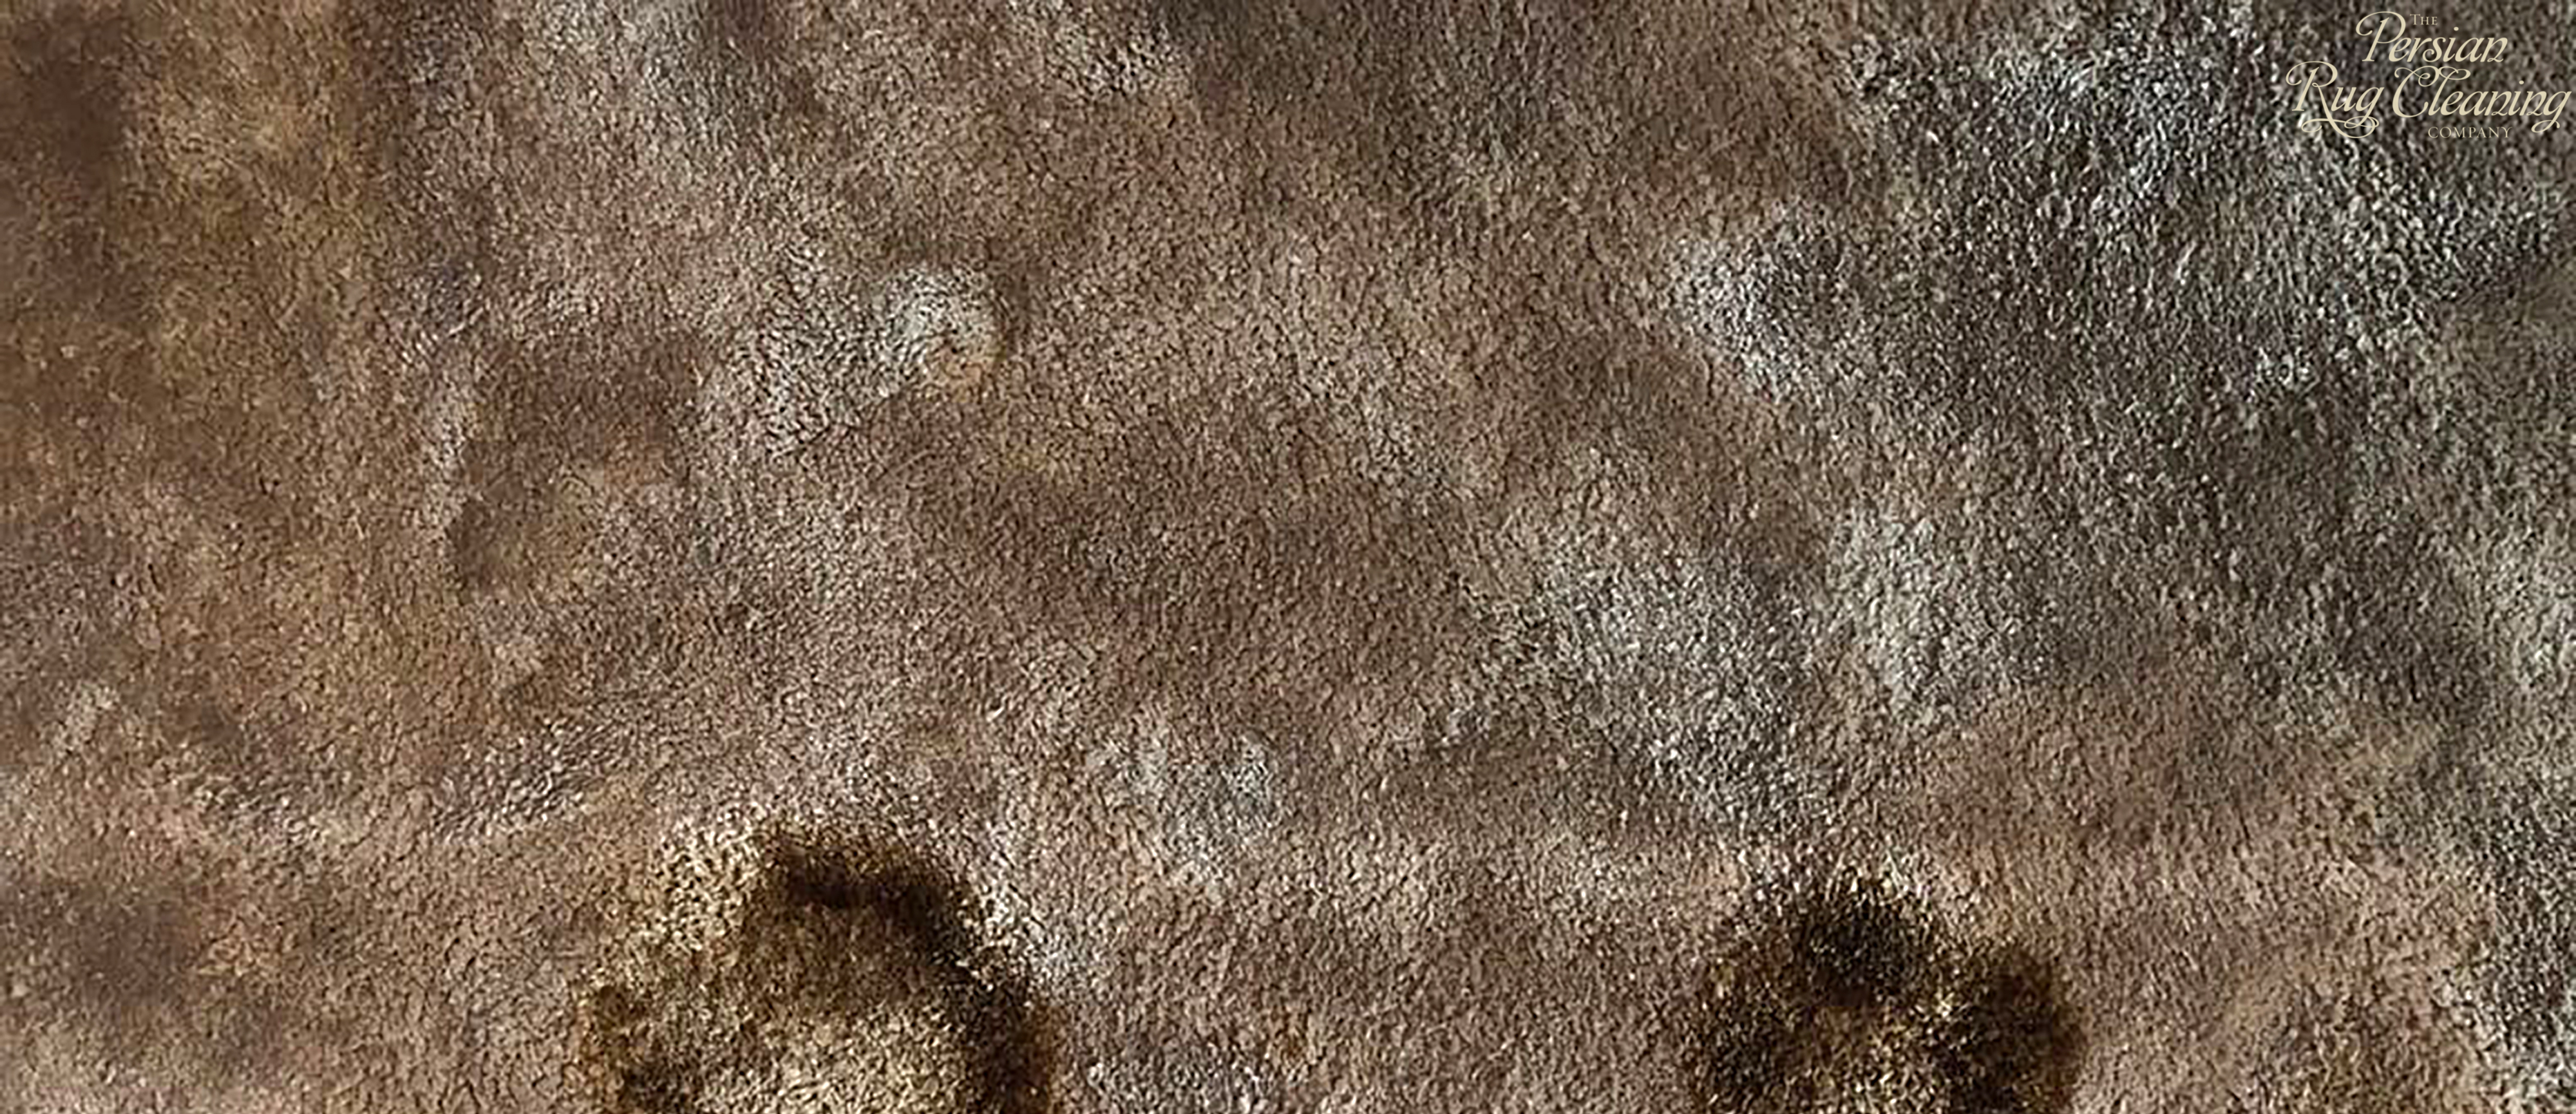 damaged viscose rug